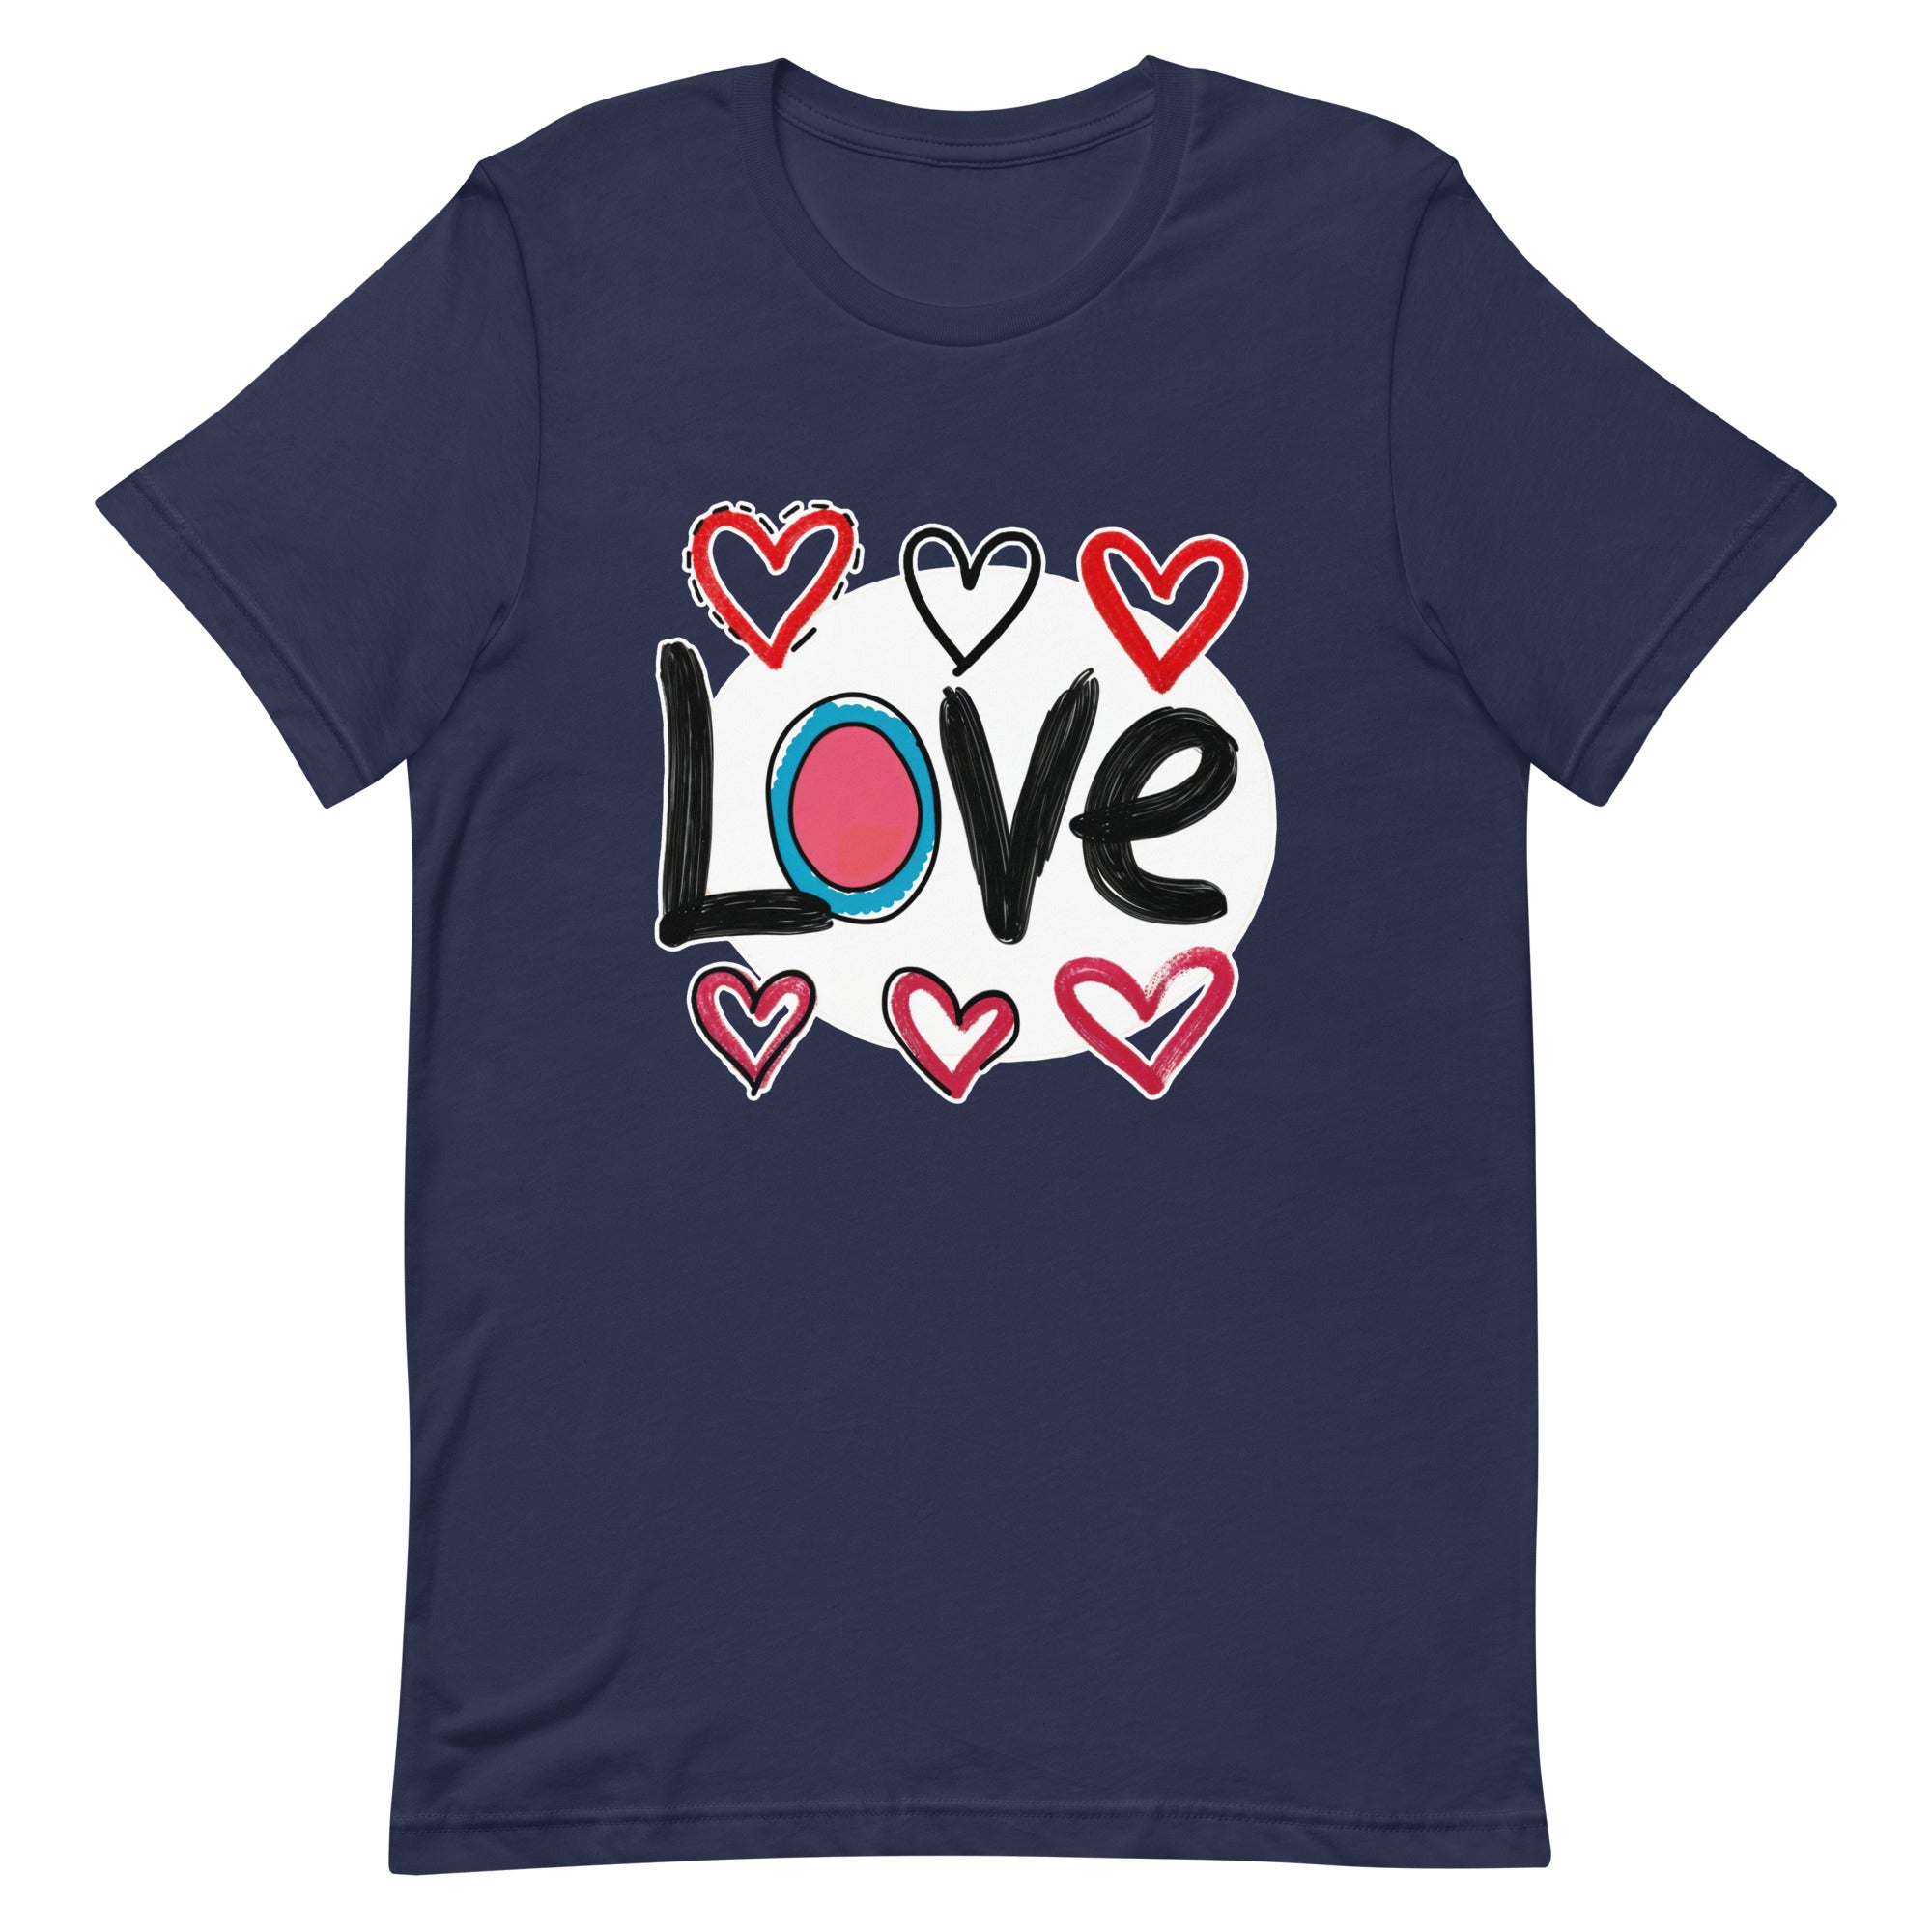 Pop-Art "Love." T-Shirt, Gift For Pop-Art Lovers Navy L S XL M DenBox